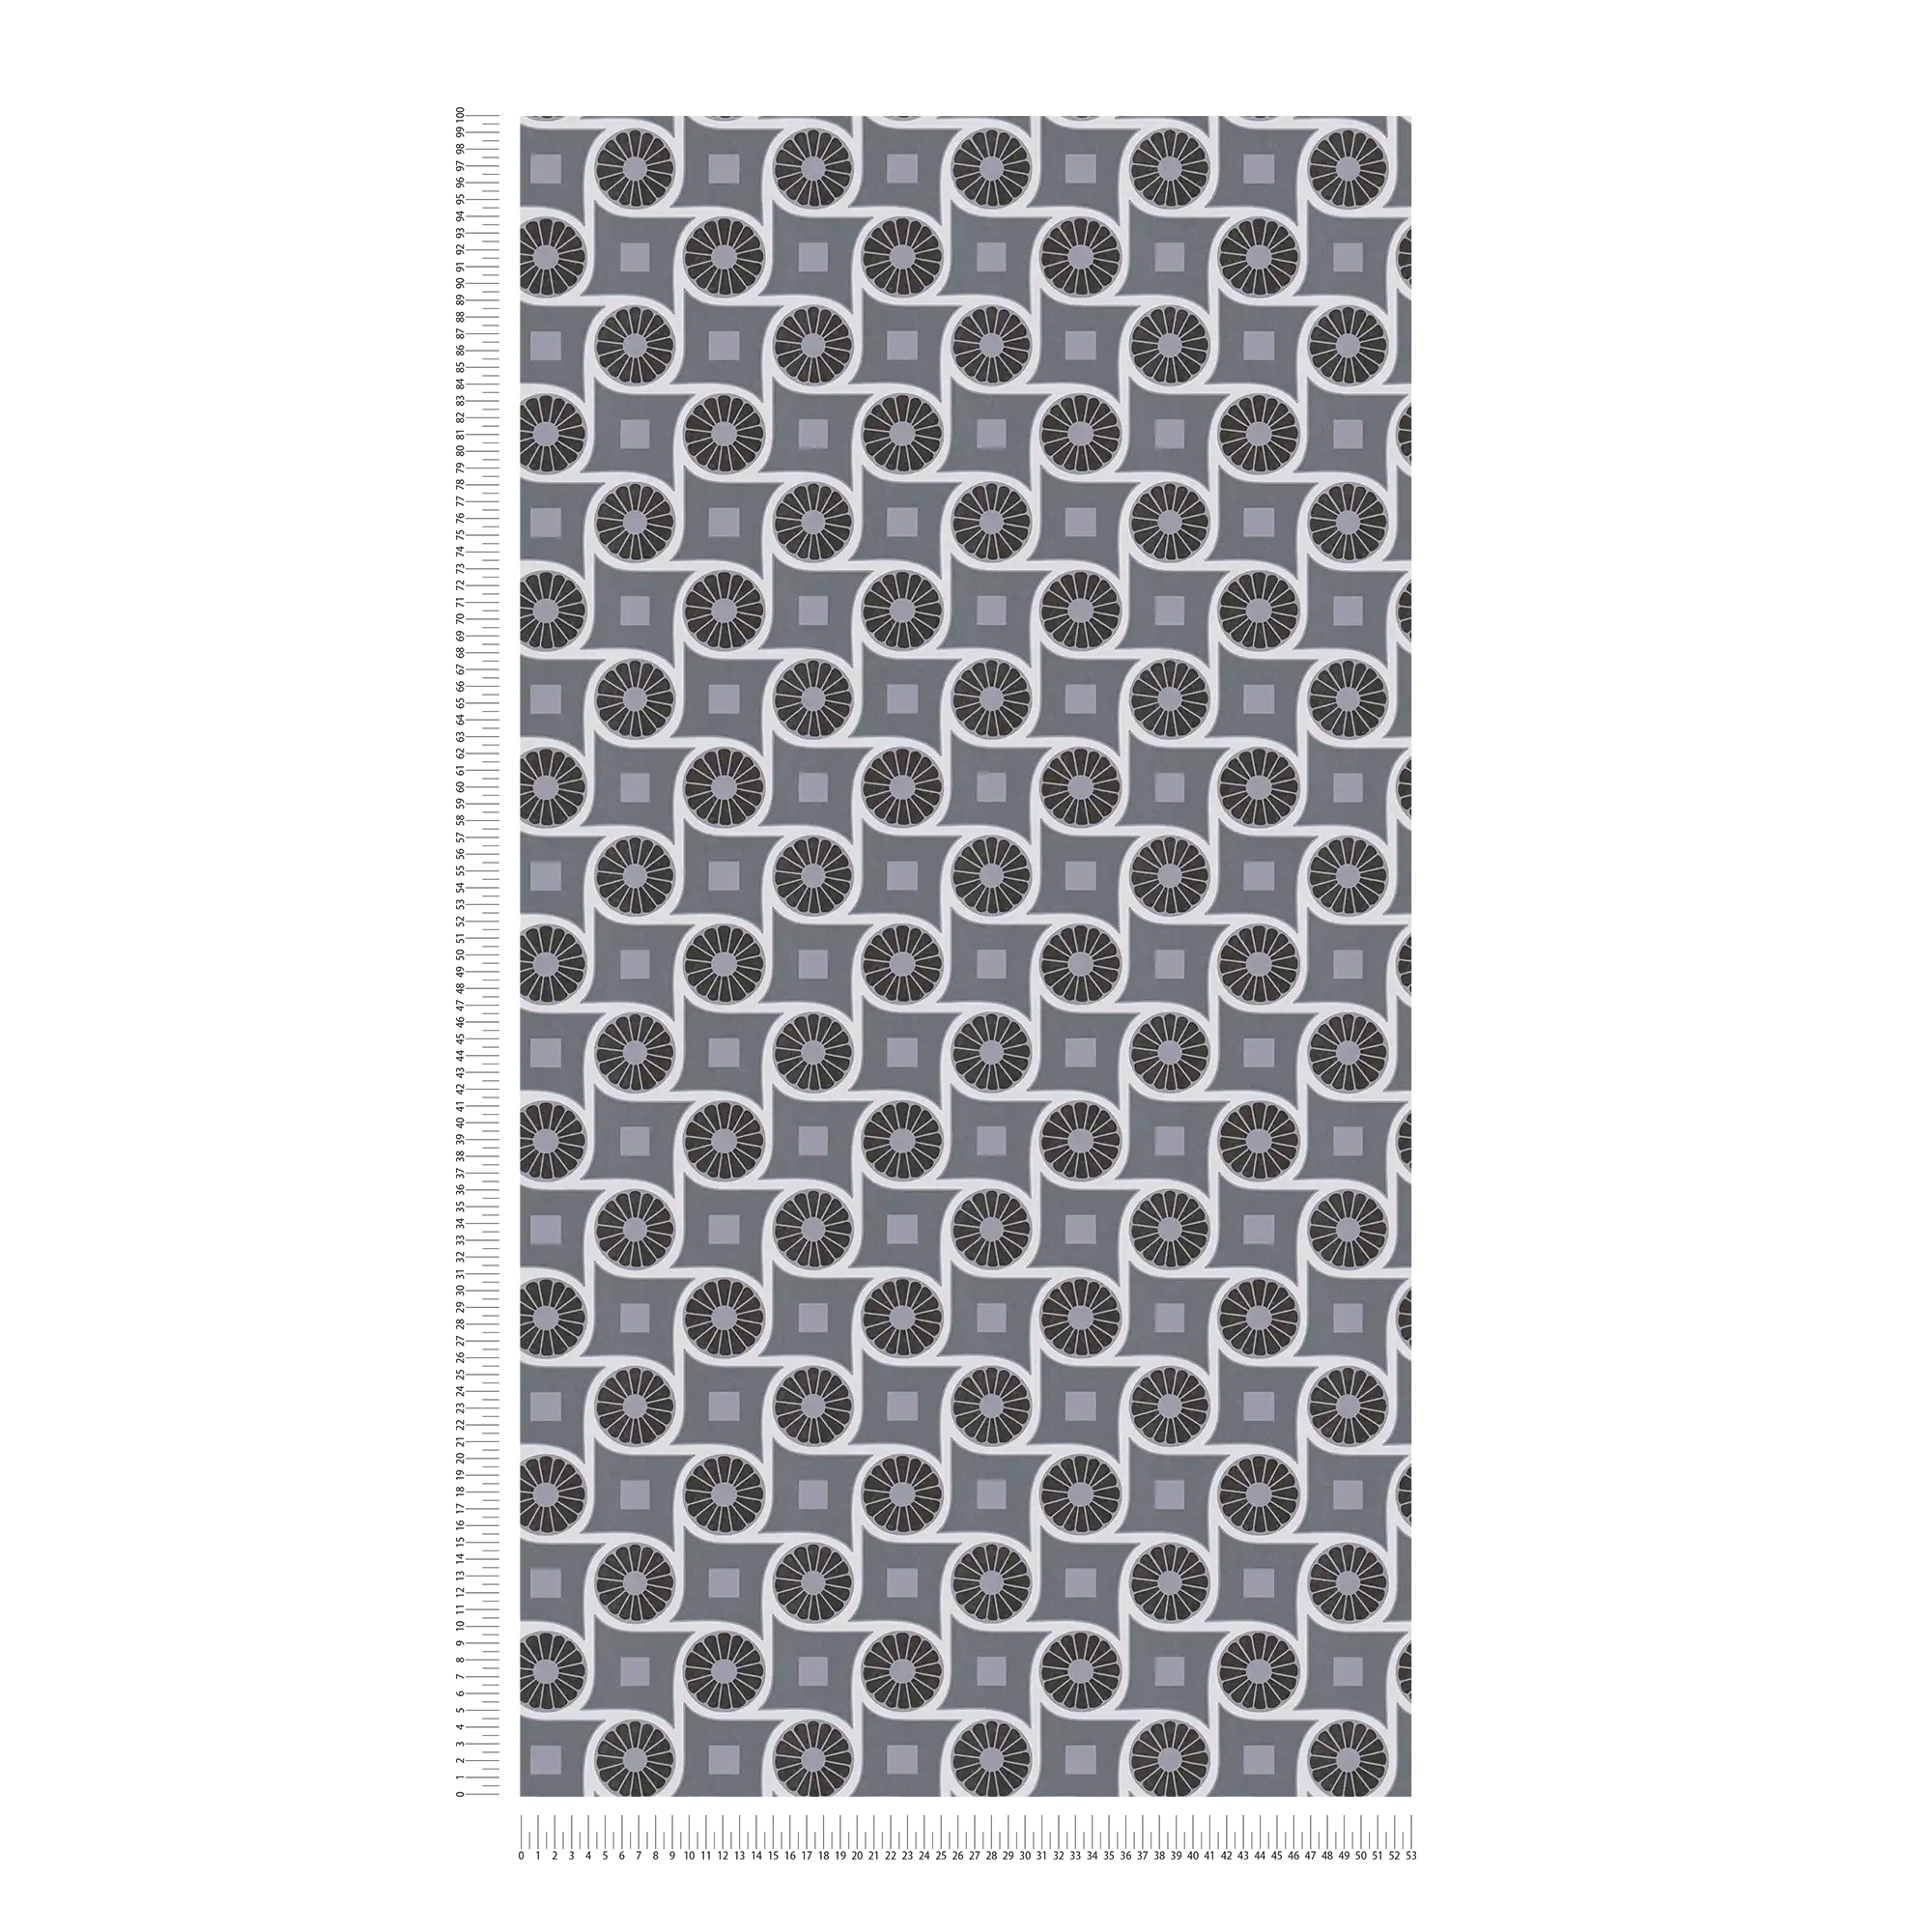             Retro stijl behang met cirkelpatroon en vierkantjes - grijs, wit, zwart
        